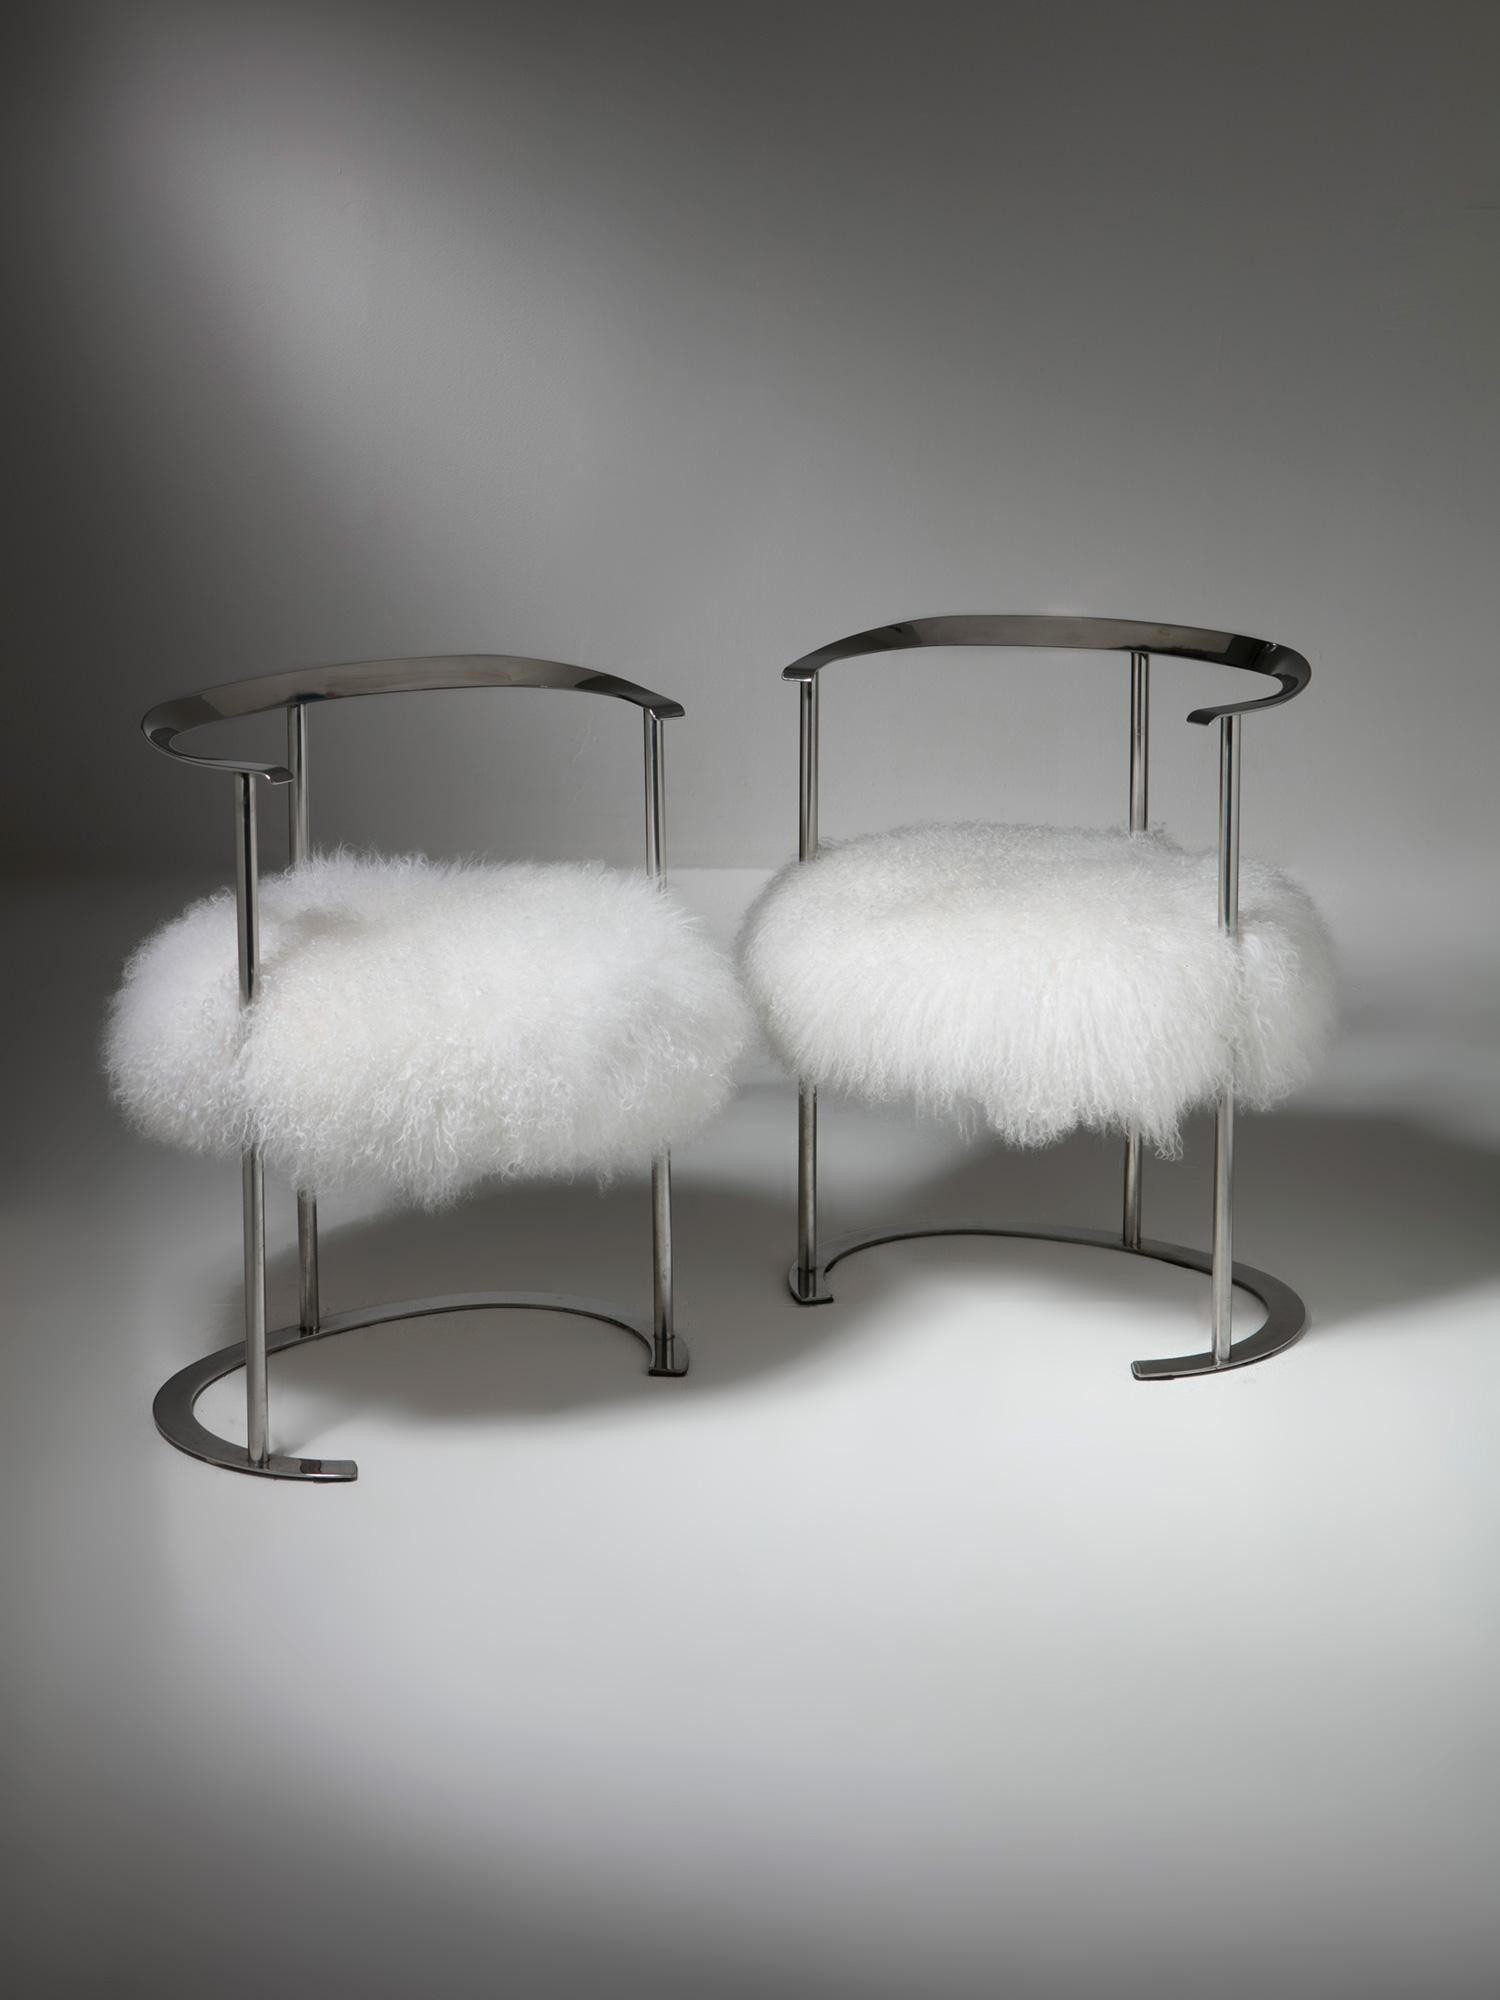 Set aus zwei Catilina-Stühlen von Luigi Caccia Dominioni für Azucena.
Bezug aus Mohair, getragen von einem verchromten Rahmen.